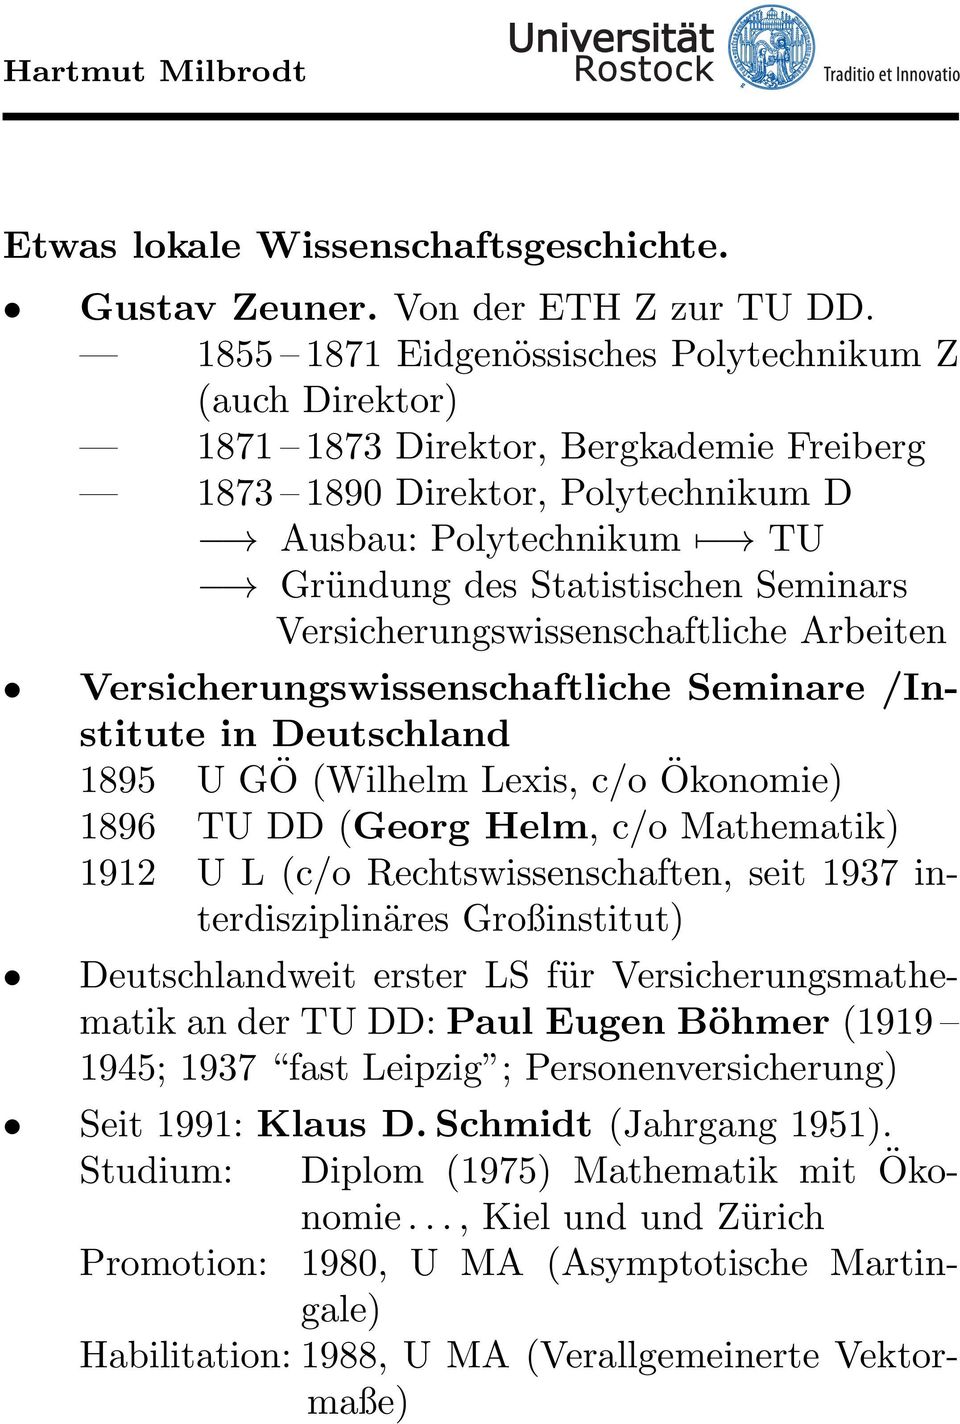 (Wilhelm Lexis, c/o Ökonomie) 1896 TU DD (Georg Helm, c/o Mathematik) 1912 U L (c/o Rechtswissenschaften, seit 1937 interdisziplinäres Großinstitut) Deutschlandweit erster LS für